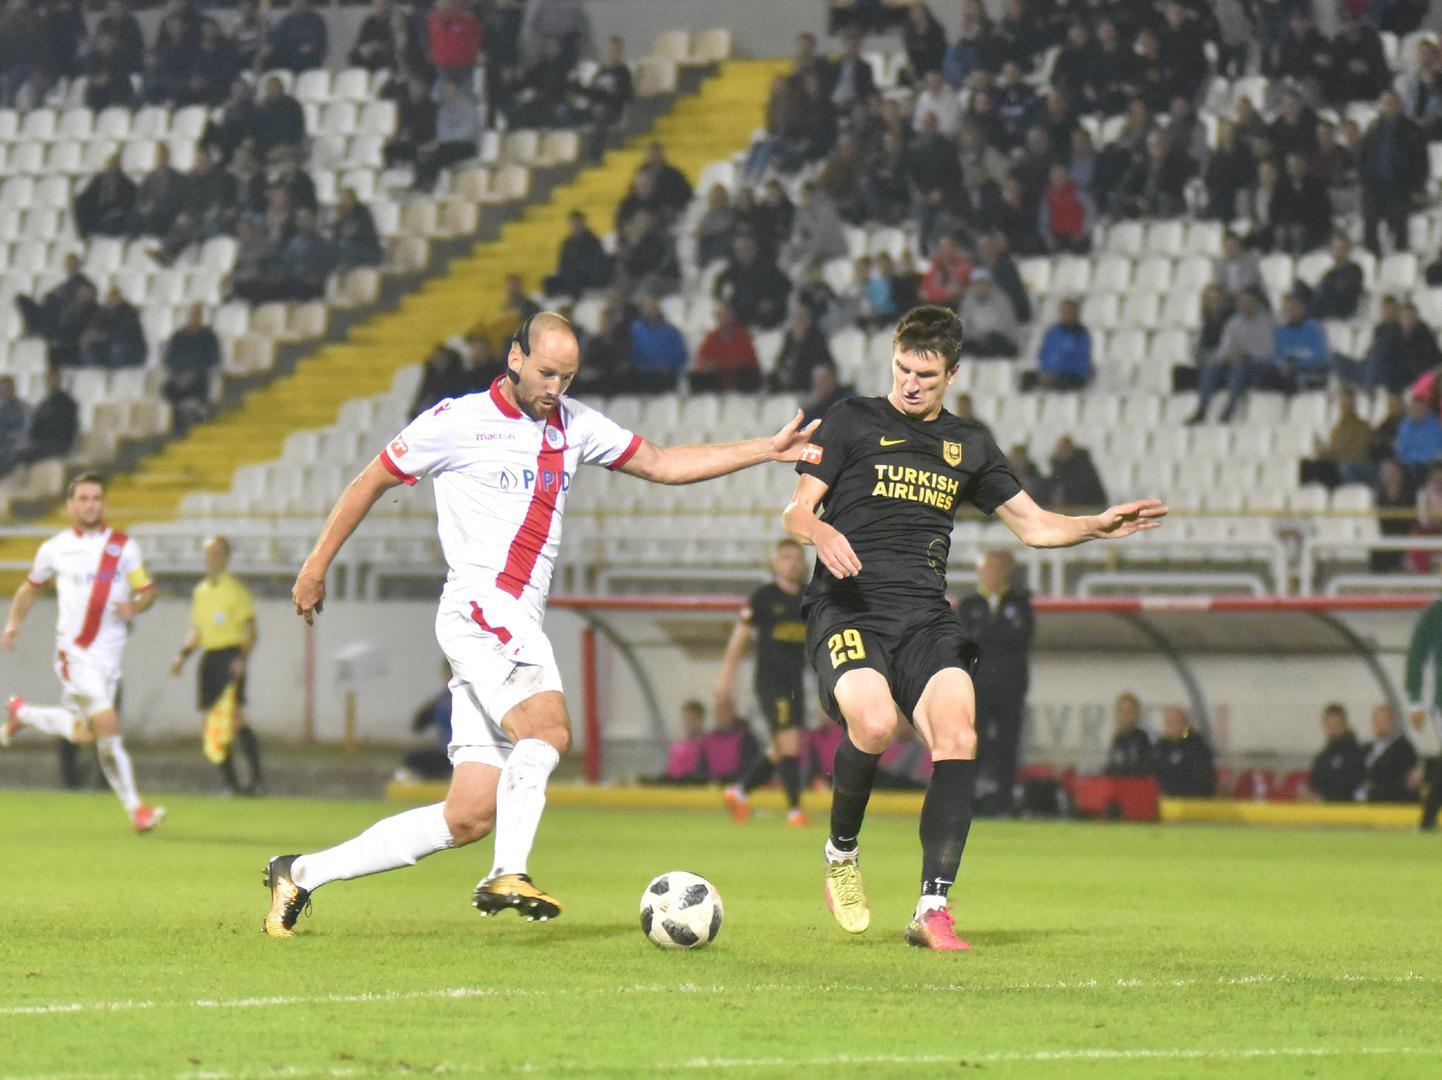 Kadušiću izbrisan žuti karton i moći će igrati protiv Tuzla Cityja